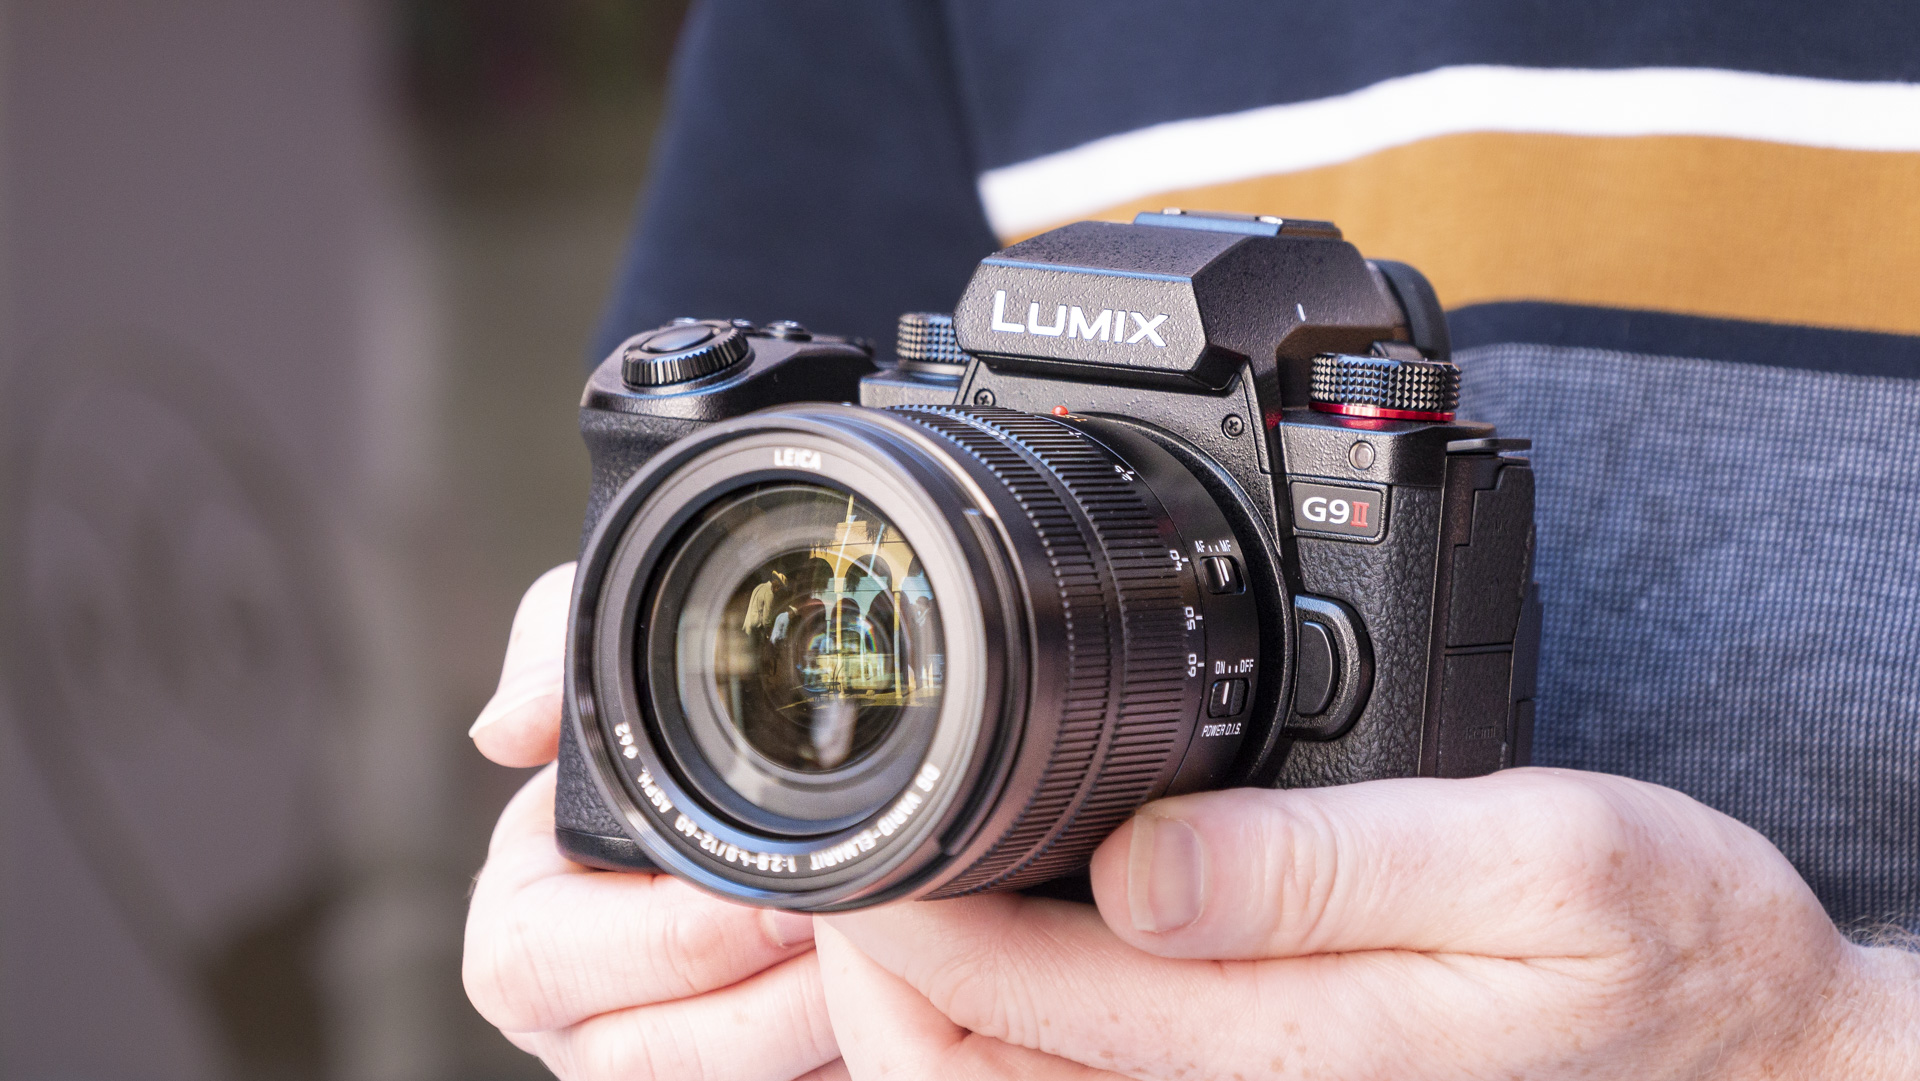 Panasonic Lumix G9 II camera in the hand